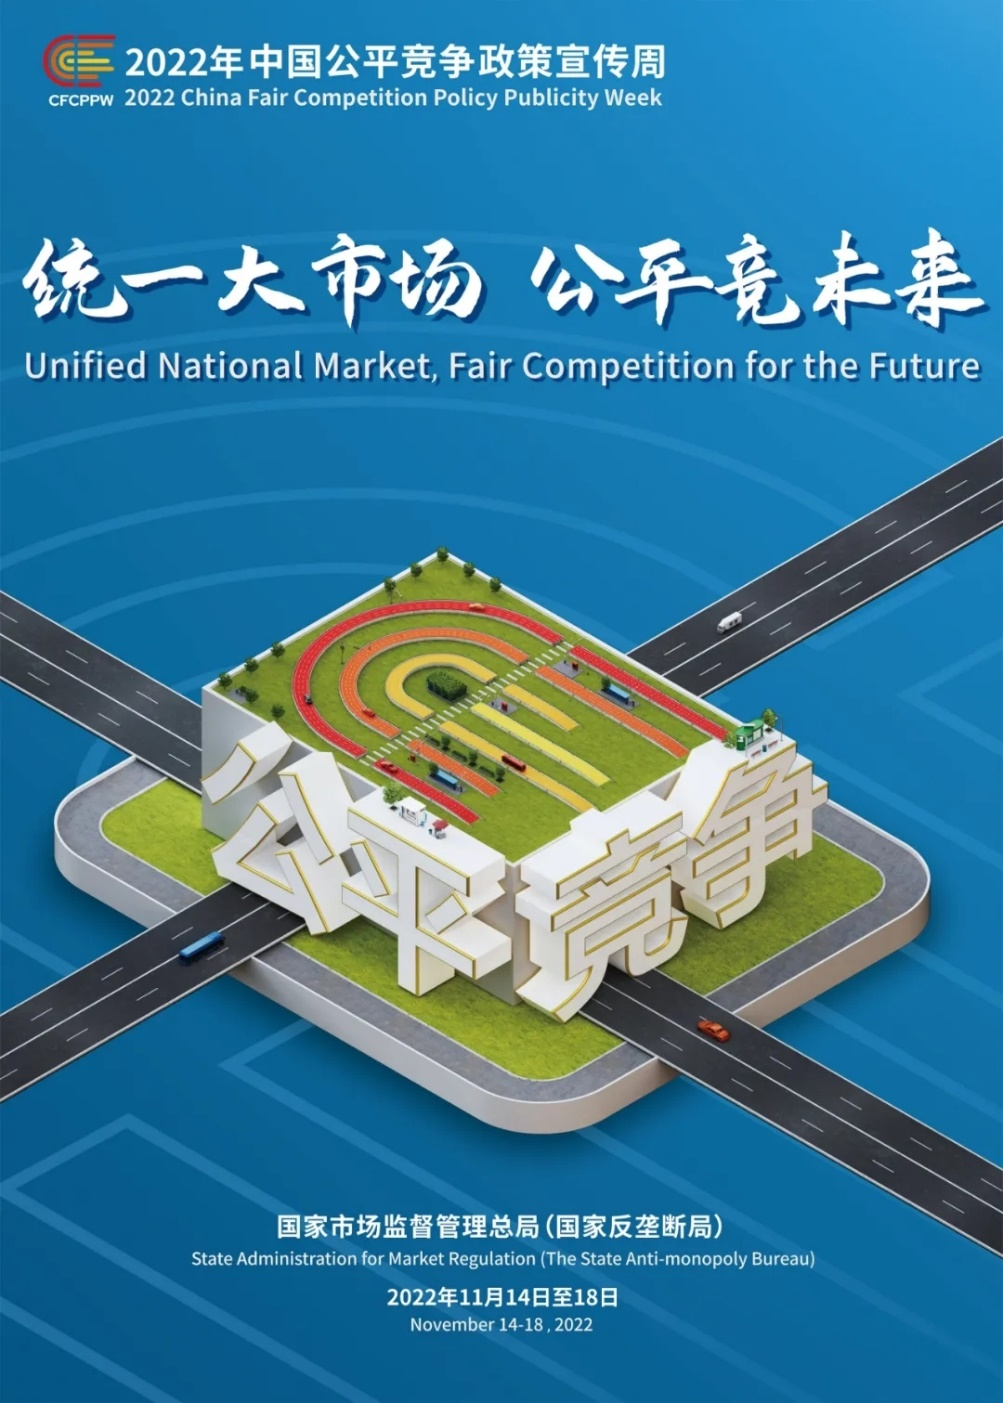 “统一大市场 公平竞未来” ——2022年中国公平竞争政策宣传周活动